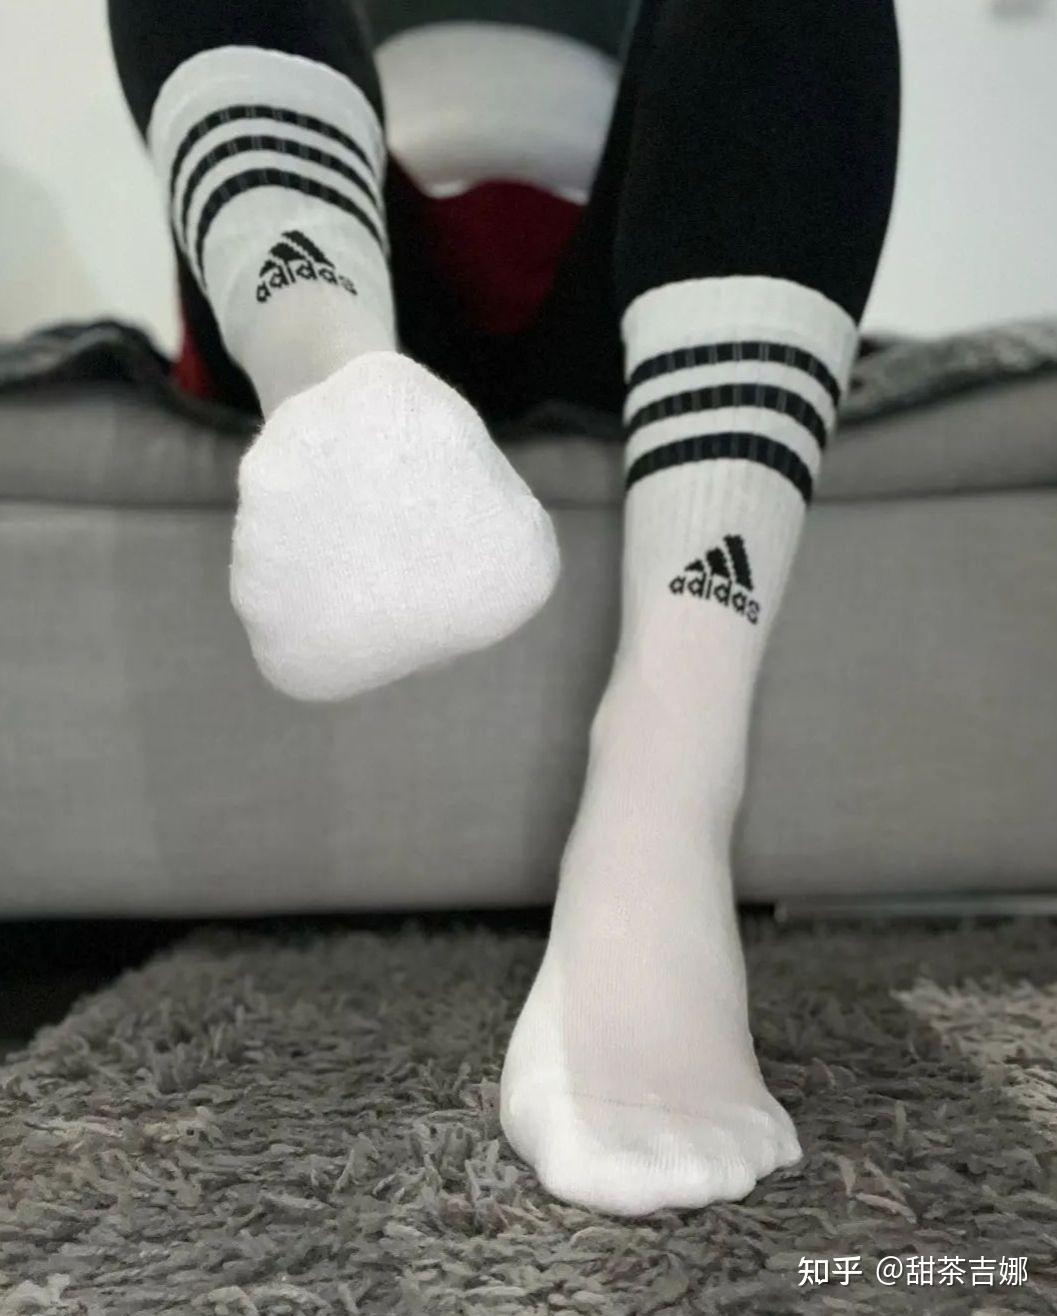 女生穿短白袜有多好看?